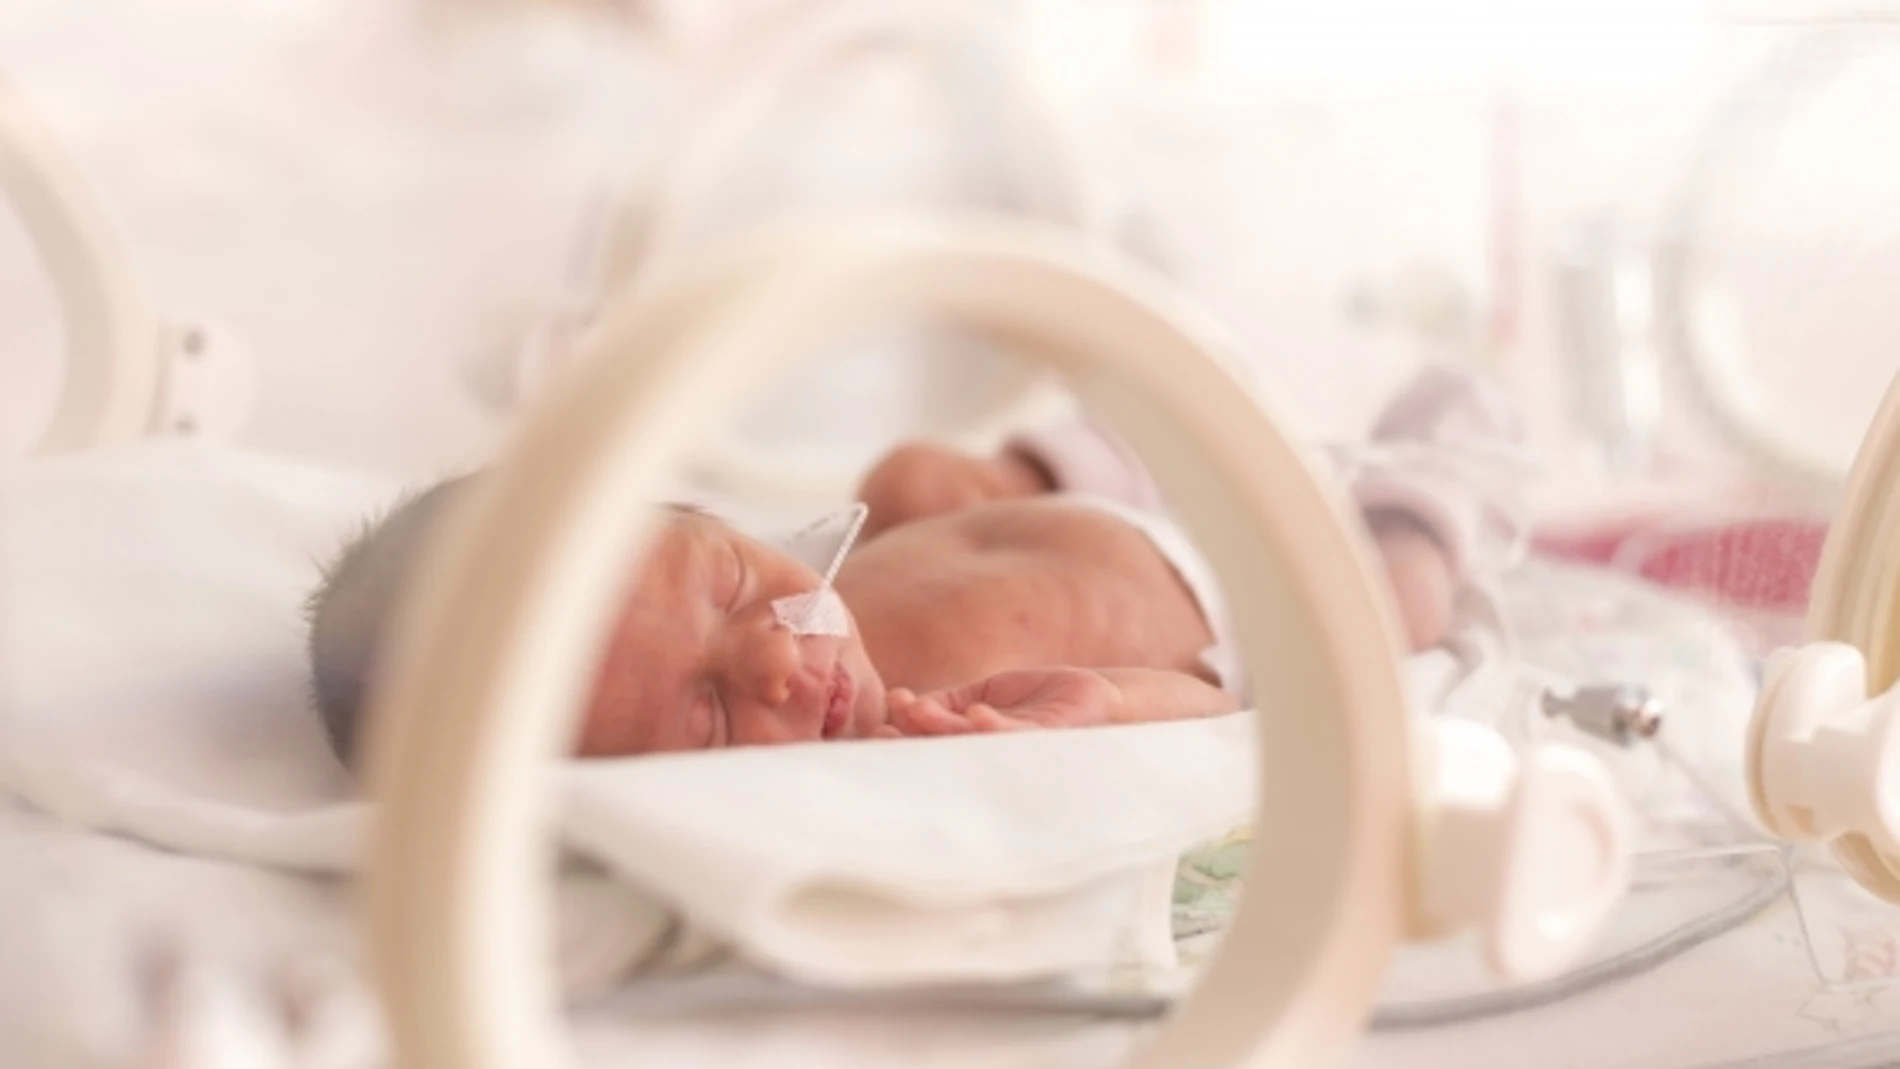 Los bebés prematuros que son cuidados por sus padres mejoran más y antes